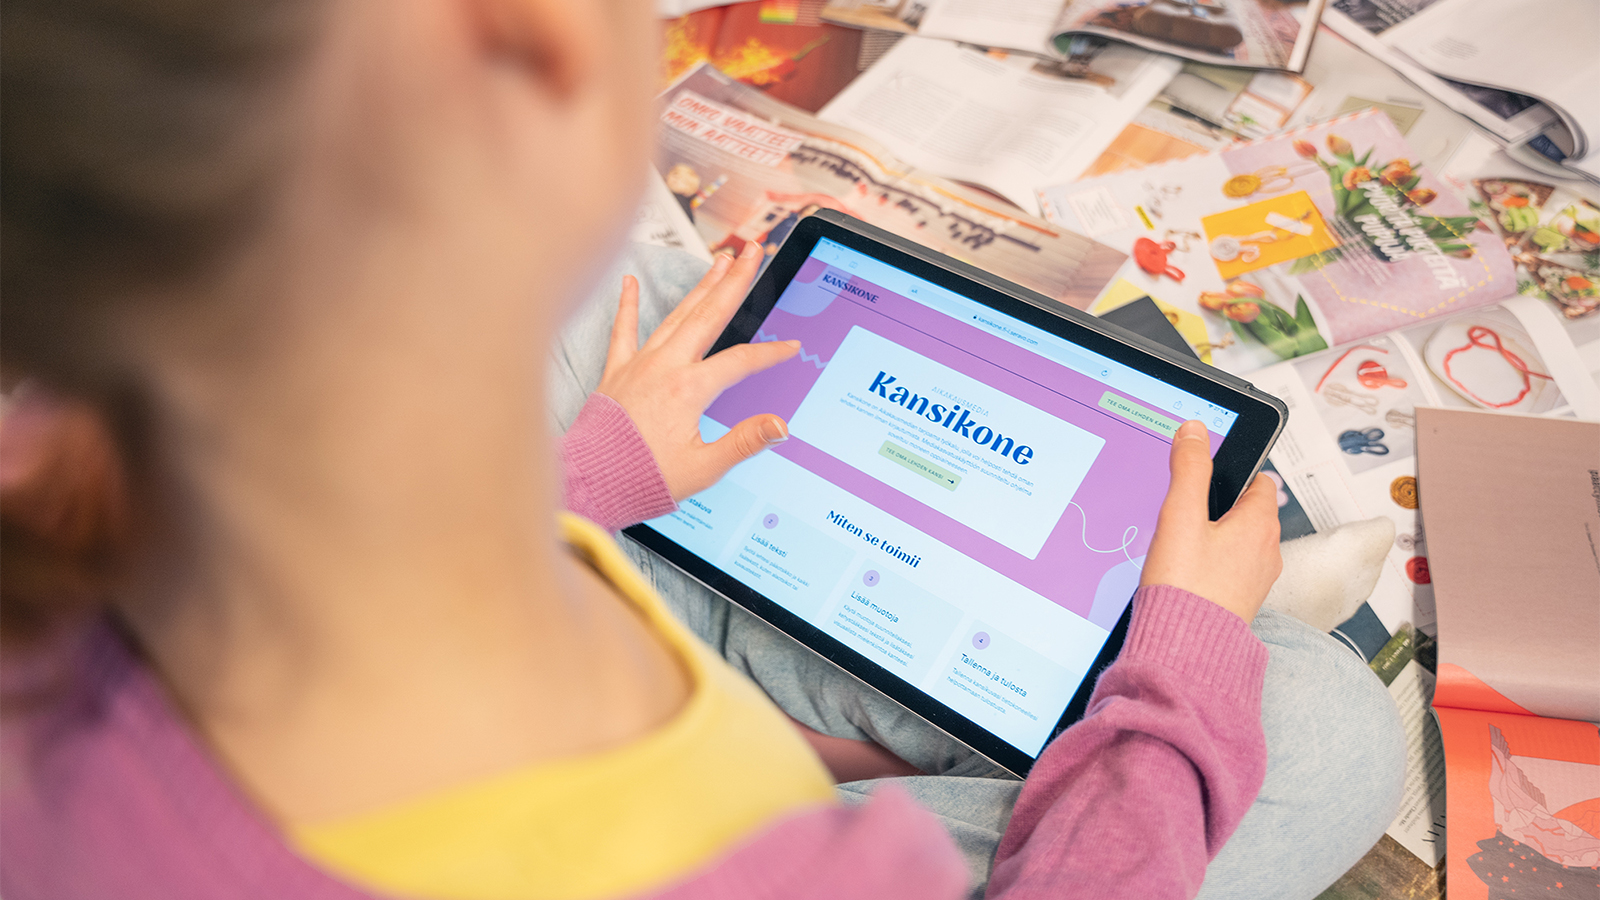 Kansikone.fi on Aikakausmedian uusi työkalu, jolla voi suunnitella ja luoda oman lehden kannen. Ohjelma toimii sekä tietokoneella että mobiililaitteella, eikä se vaadi kirjautumista.